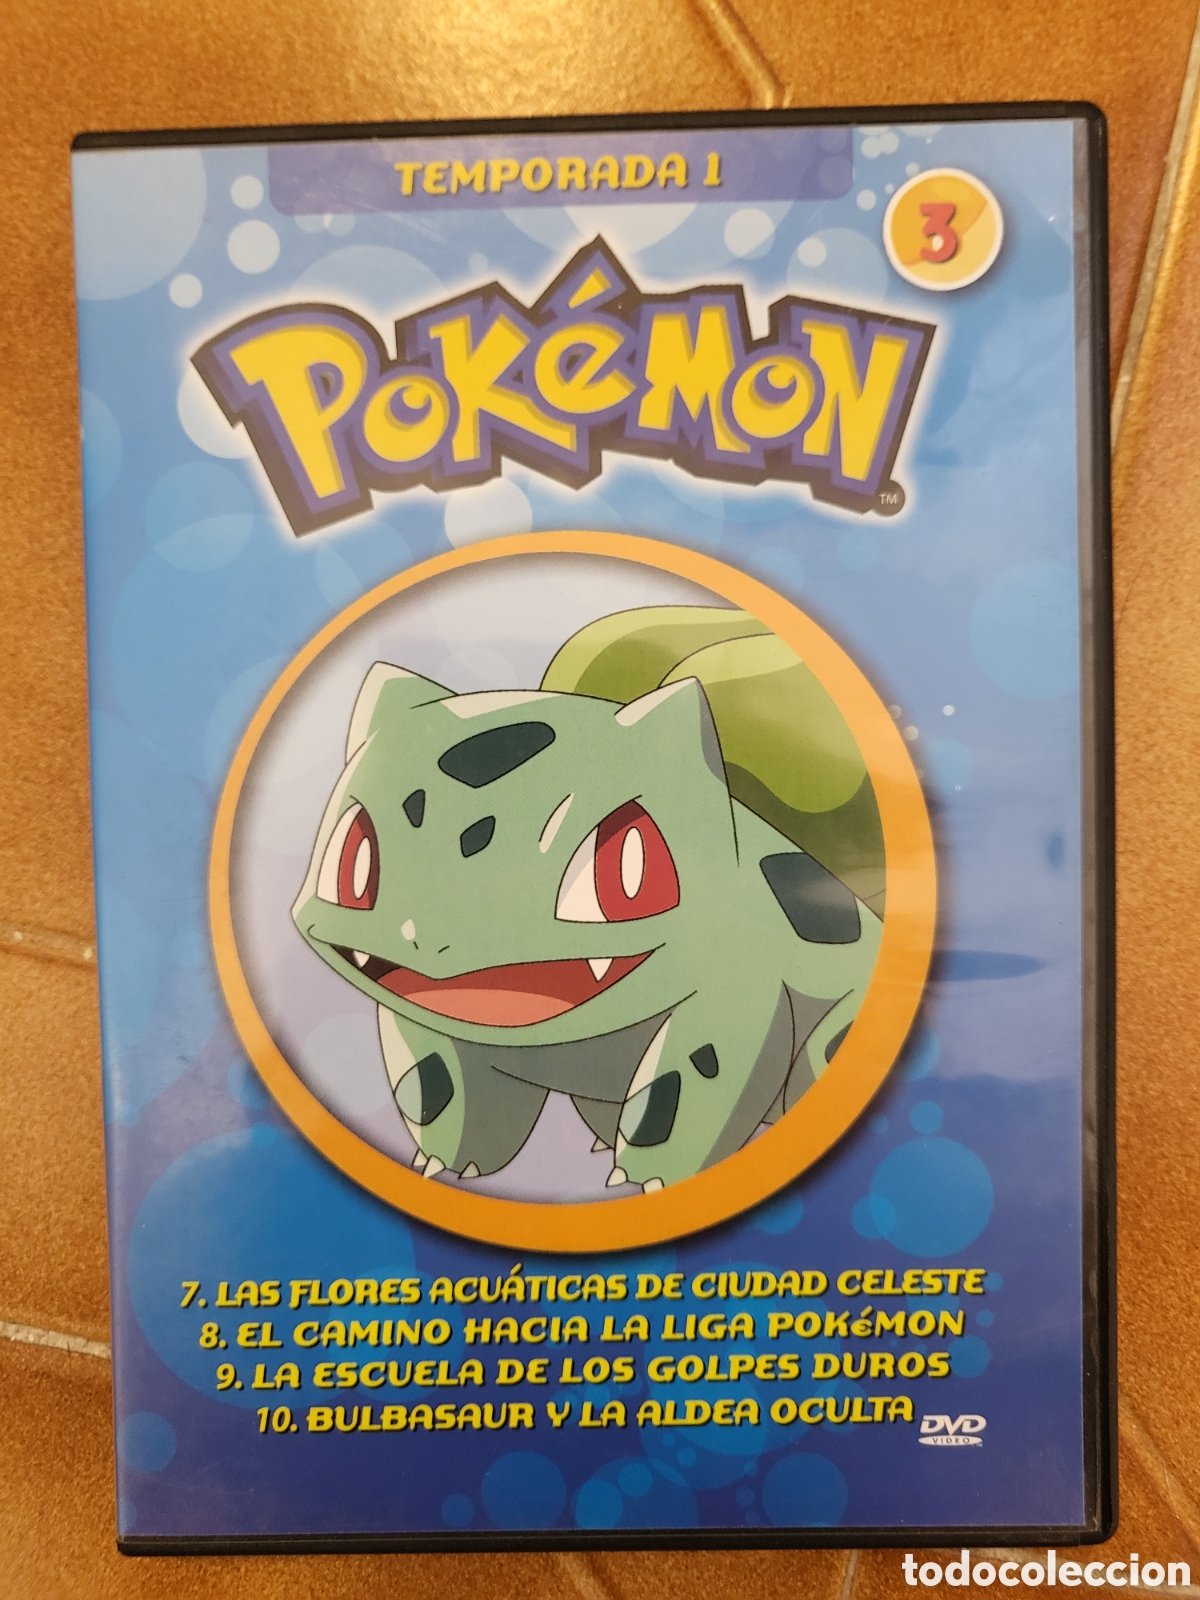 Pokémon Temporada 1 e Pokémon 3 DVD em segunda mão durante 15 EUR